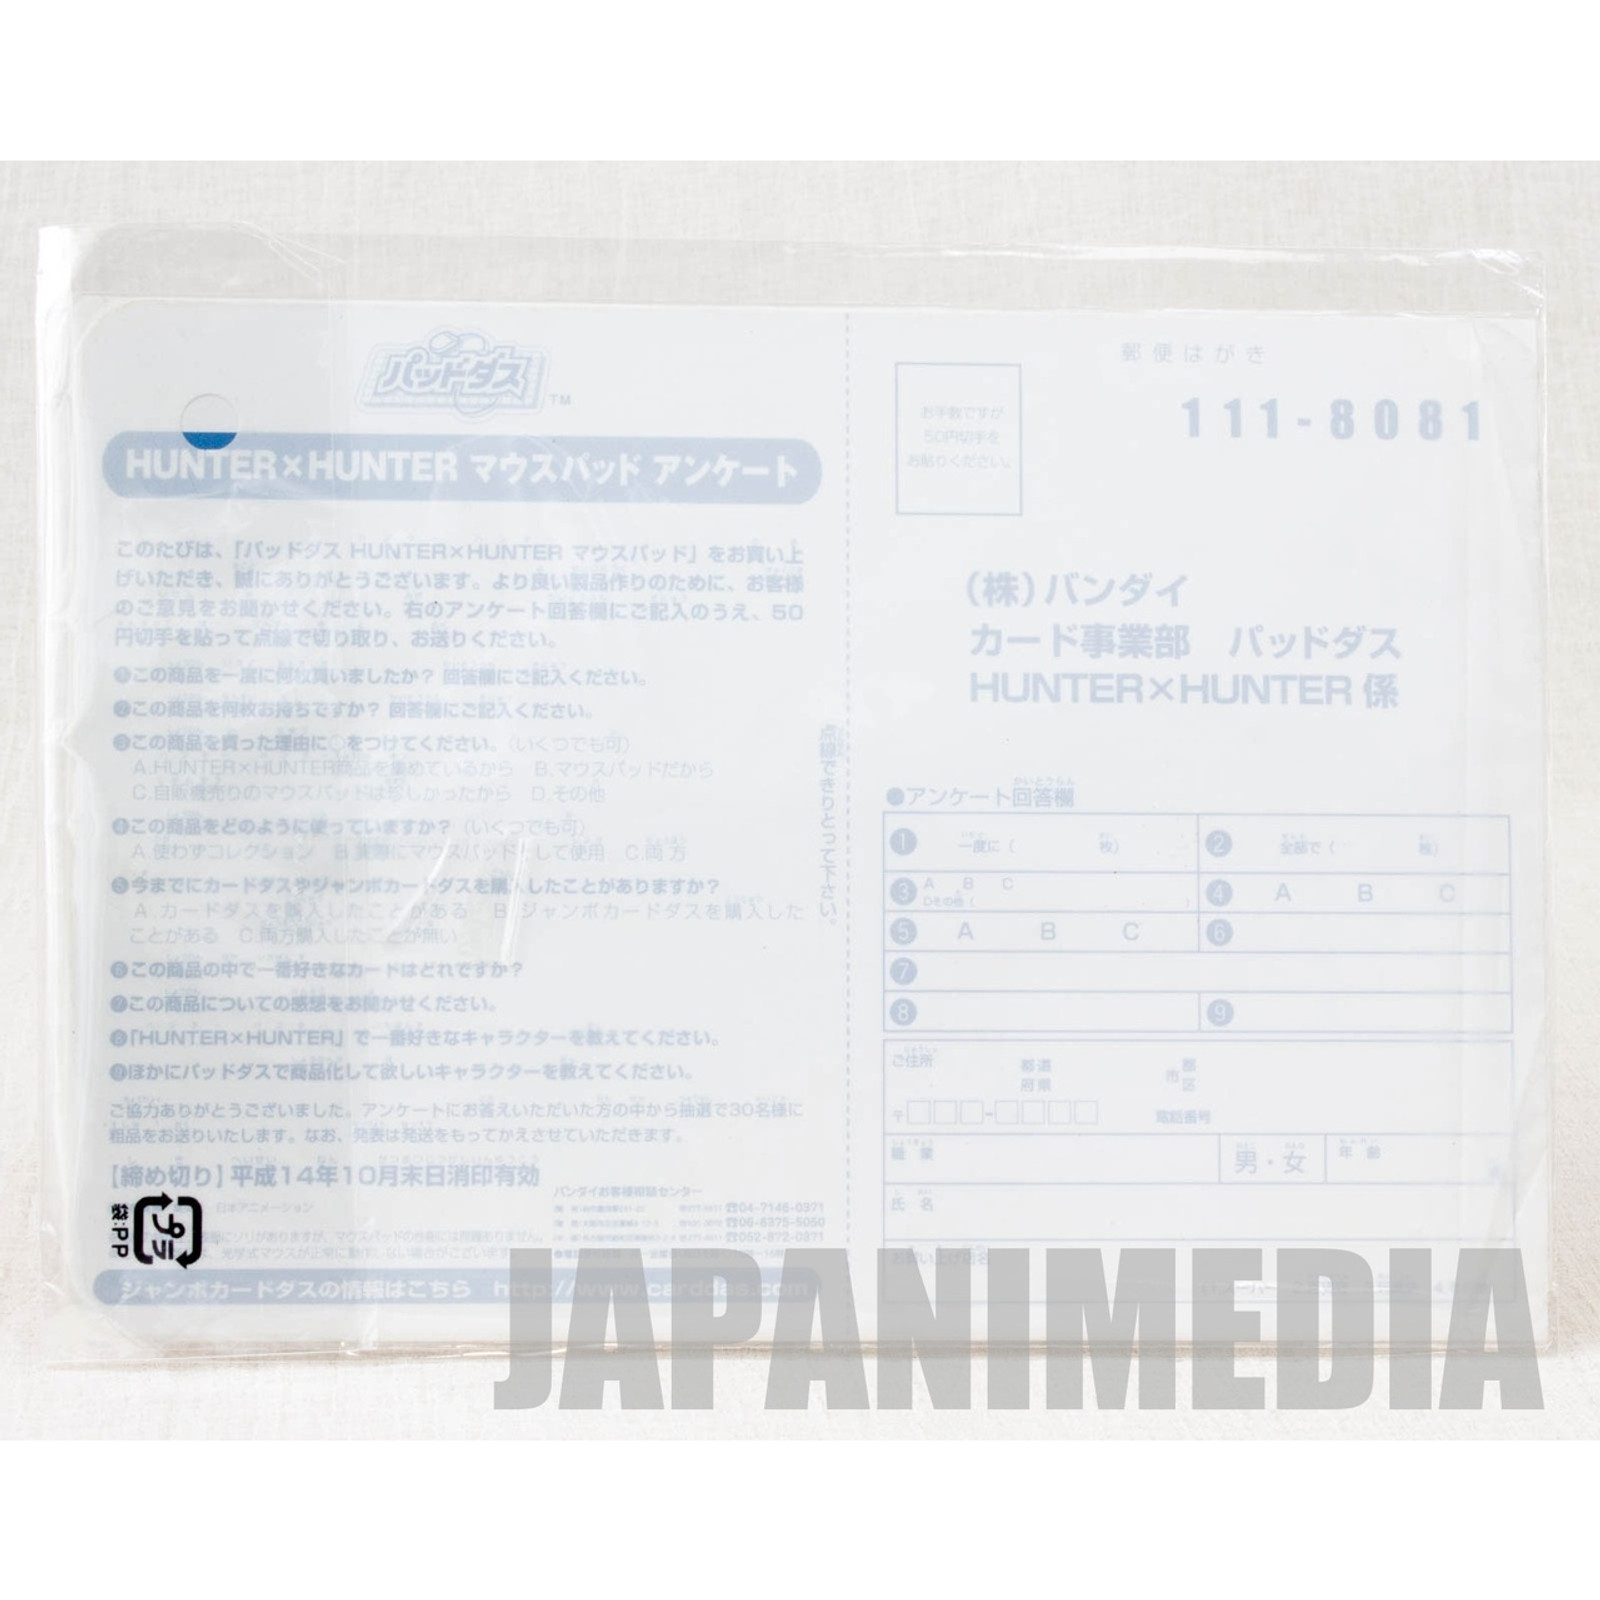 Hunter x Hunter Kurapika & Chrollo Jumbo Card Paddass BANDAI JAPAN ANIME MANGA